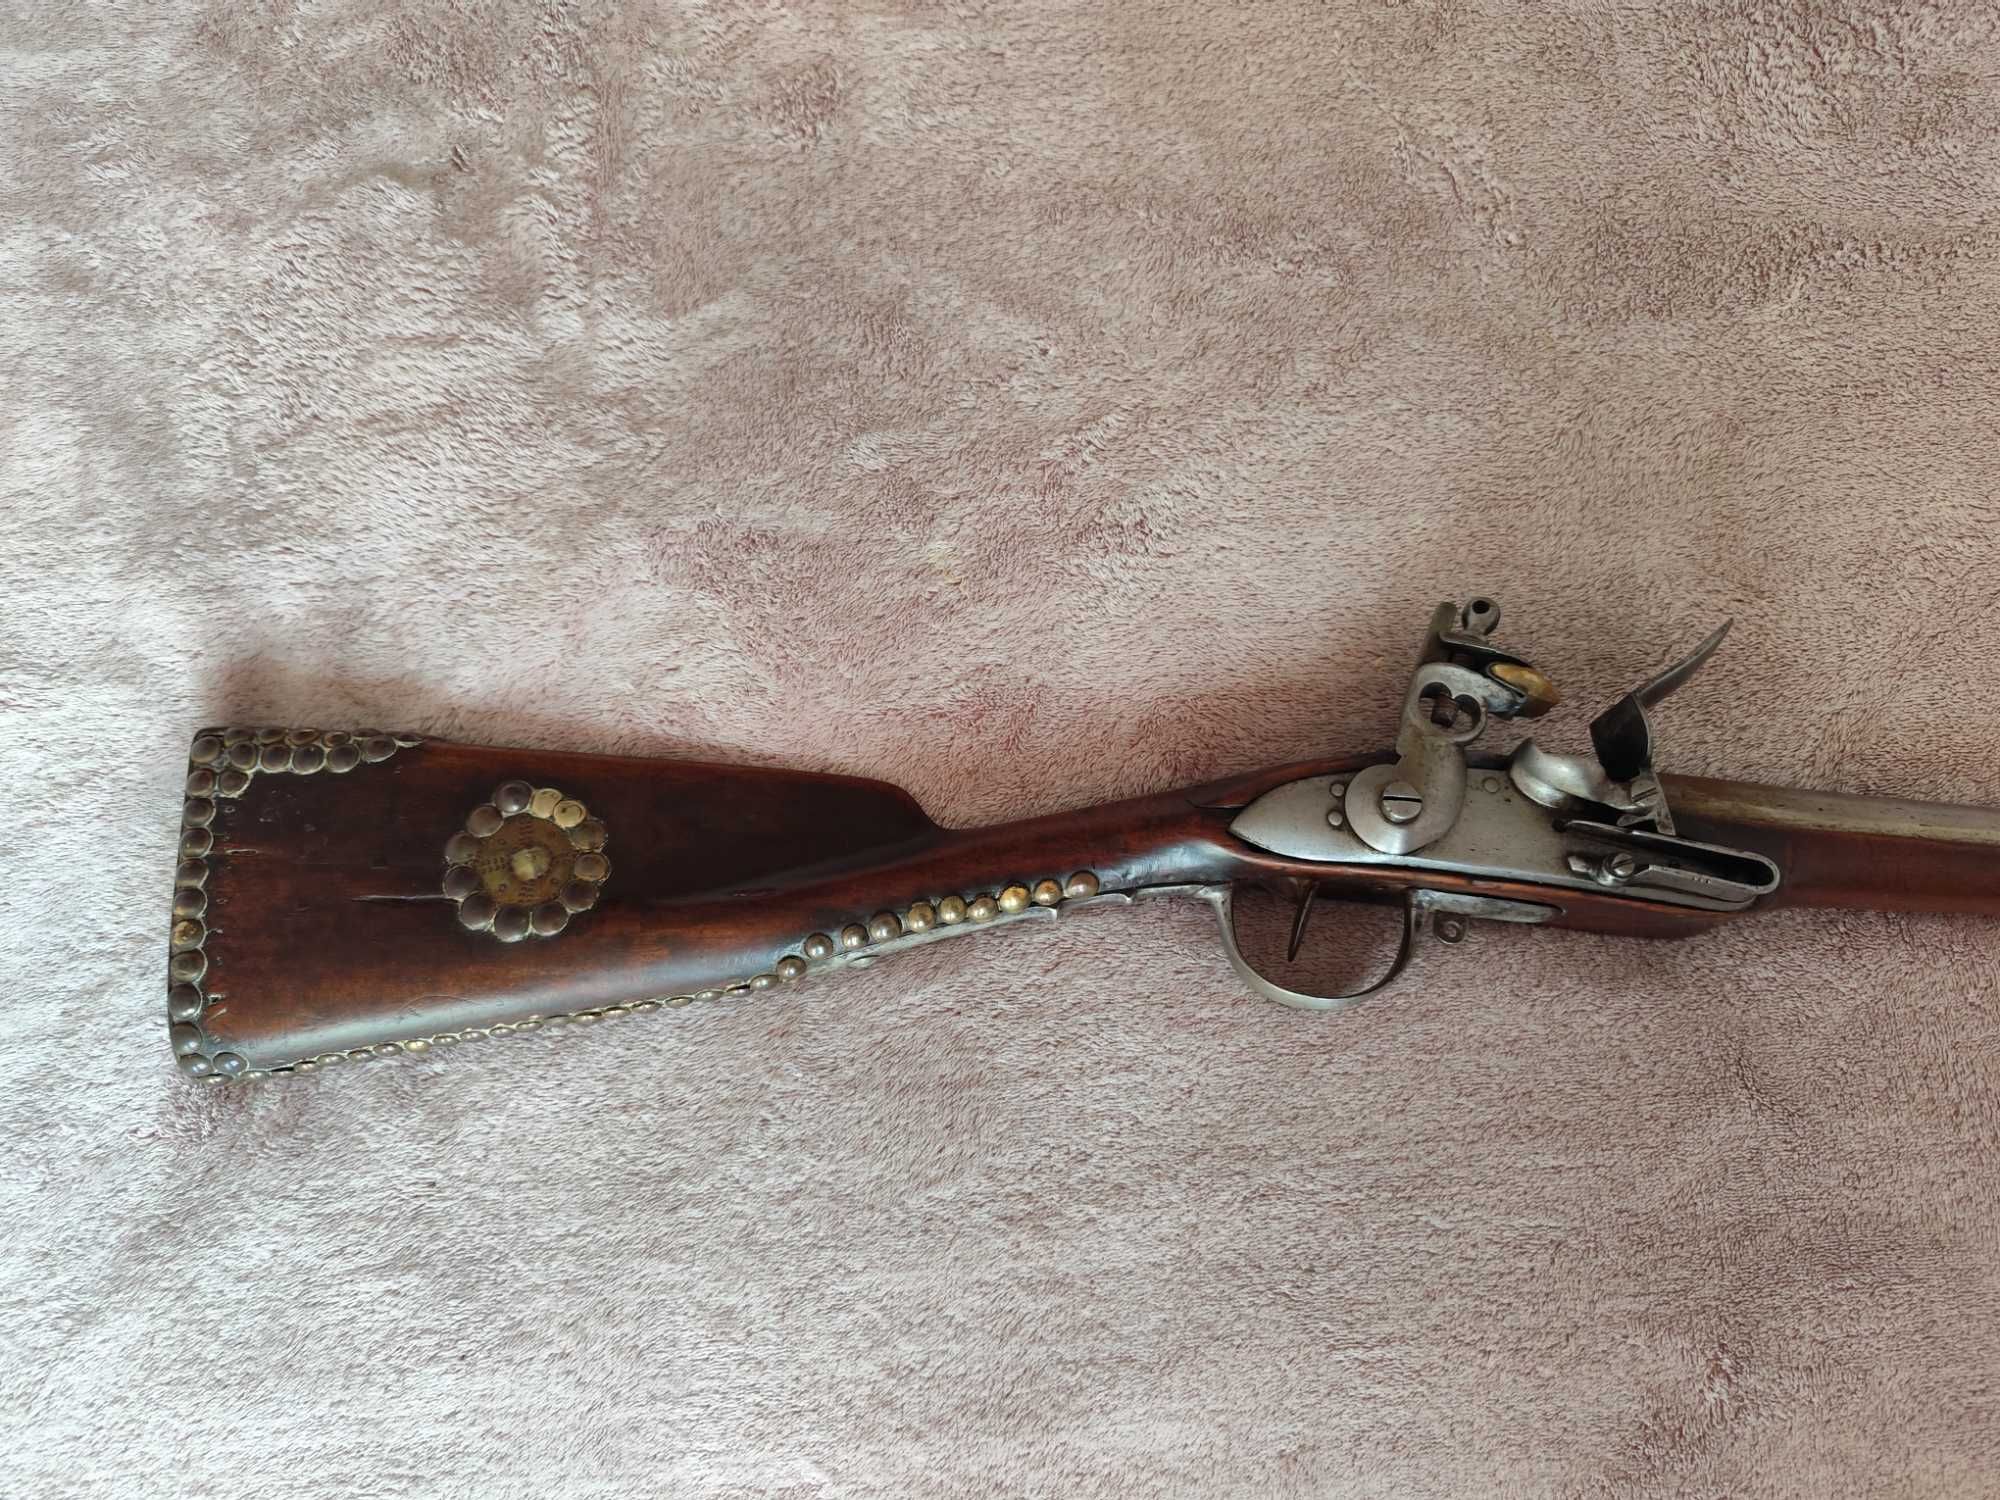 Автентична кремъчна пушка от 19 век